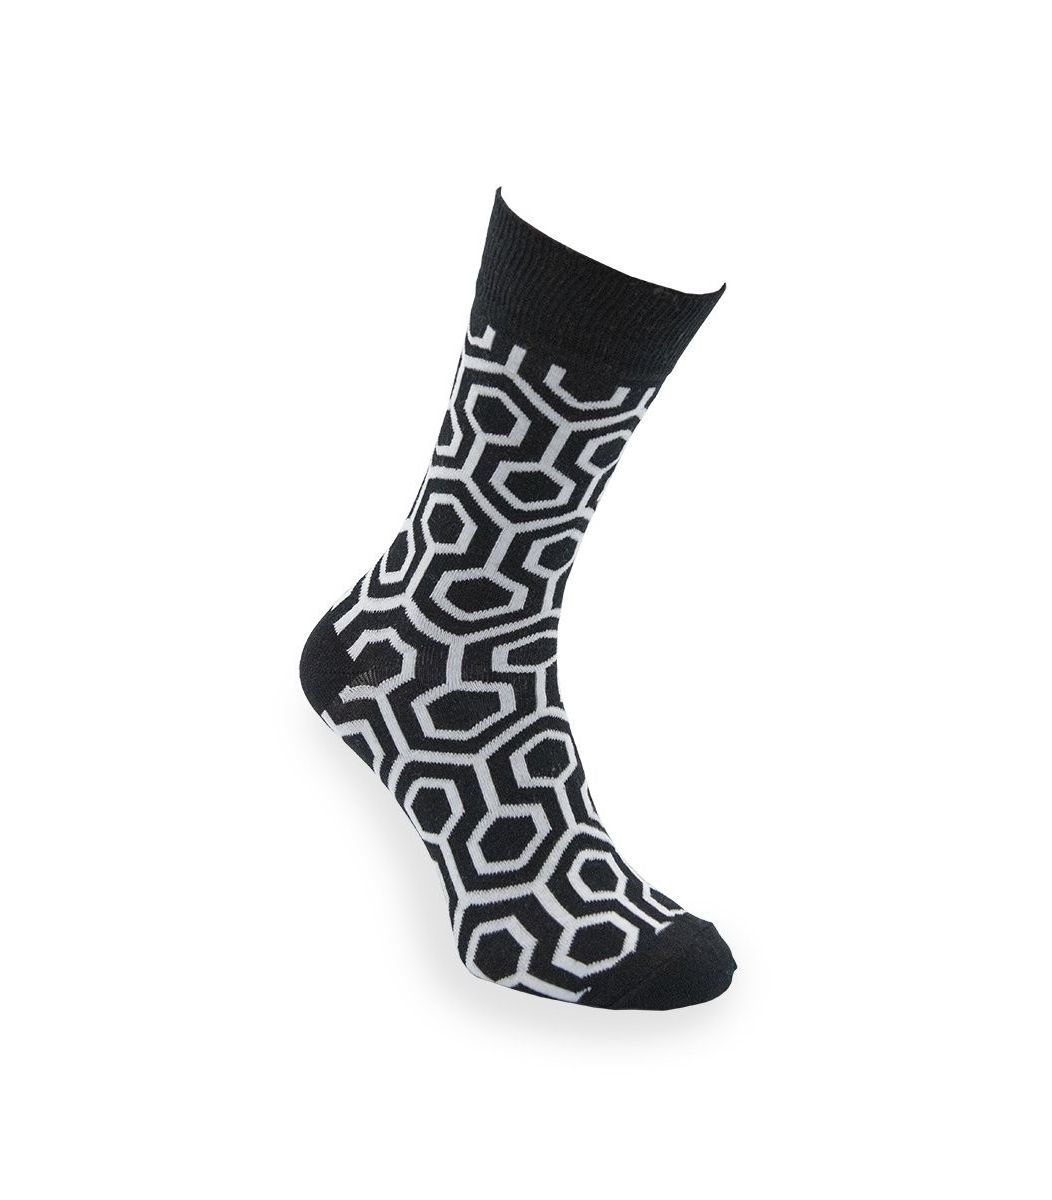  Κανονικές / Καθημερινές κάλτσες  Unisex Κάλτσα Kiev {PRODUCT_REFERENCE} - 1